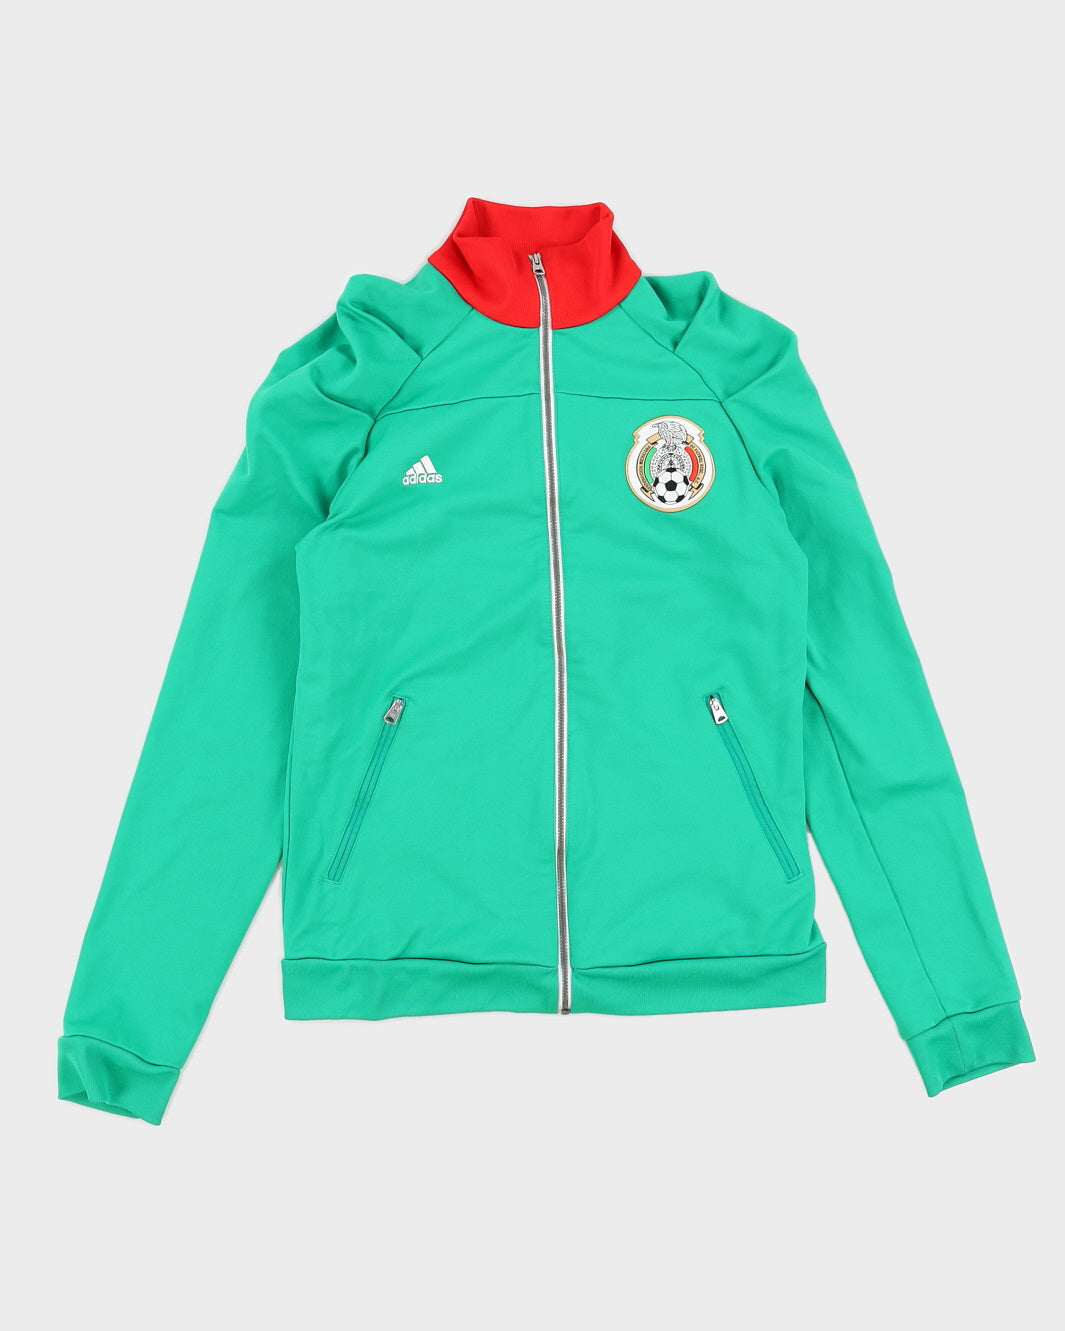 2012 Mexico Adidas Green Track Jacket - XS